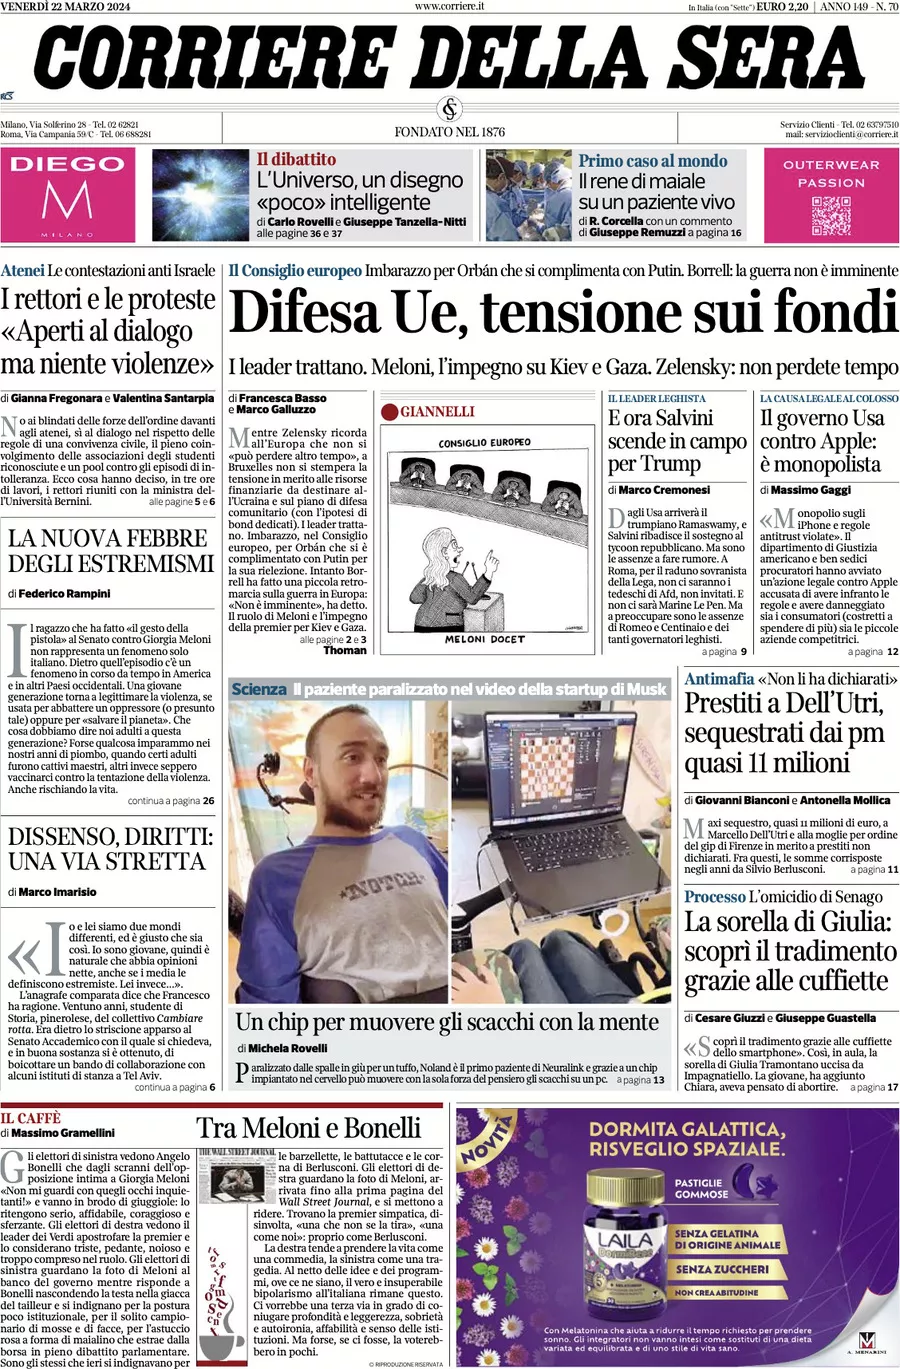 Prima-pagina-del-corriere-della-sera-edizione-di-oggi-22-03-2024